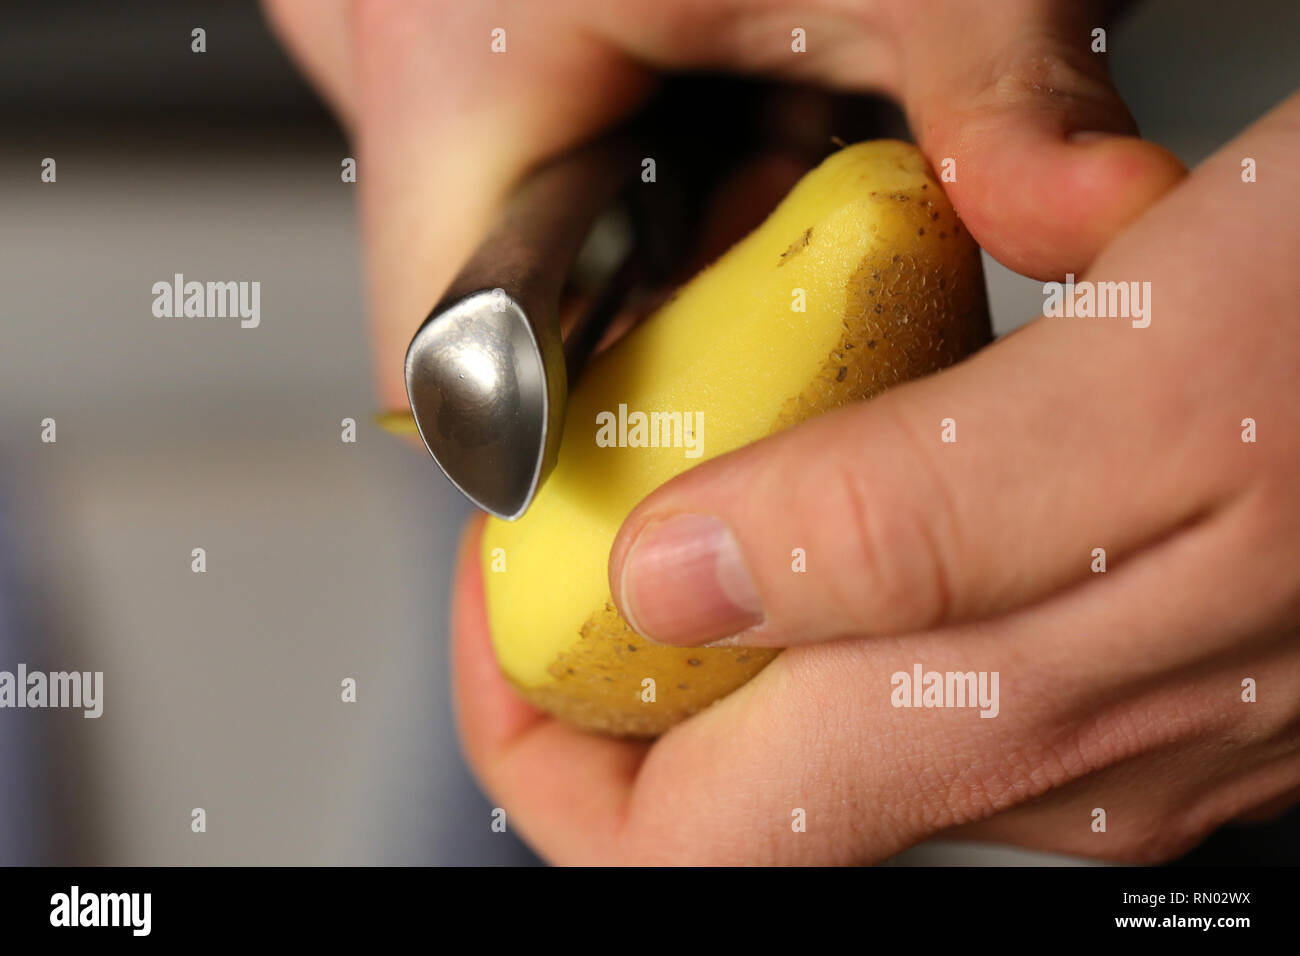 Un uomo pelare patate metallico con un pelapatate. È possibile vedere le mani, una patata e sbucciatore in questa foto. Immagine a colori. Primo piano. Foto Stock